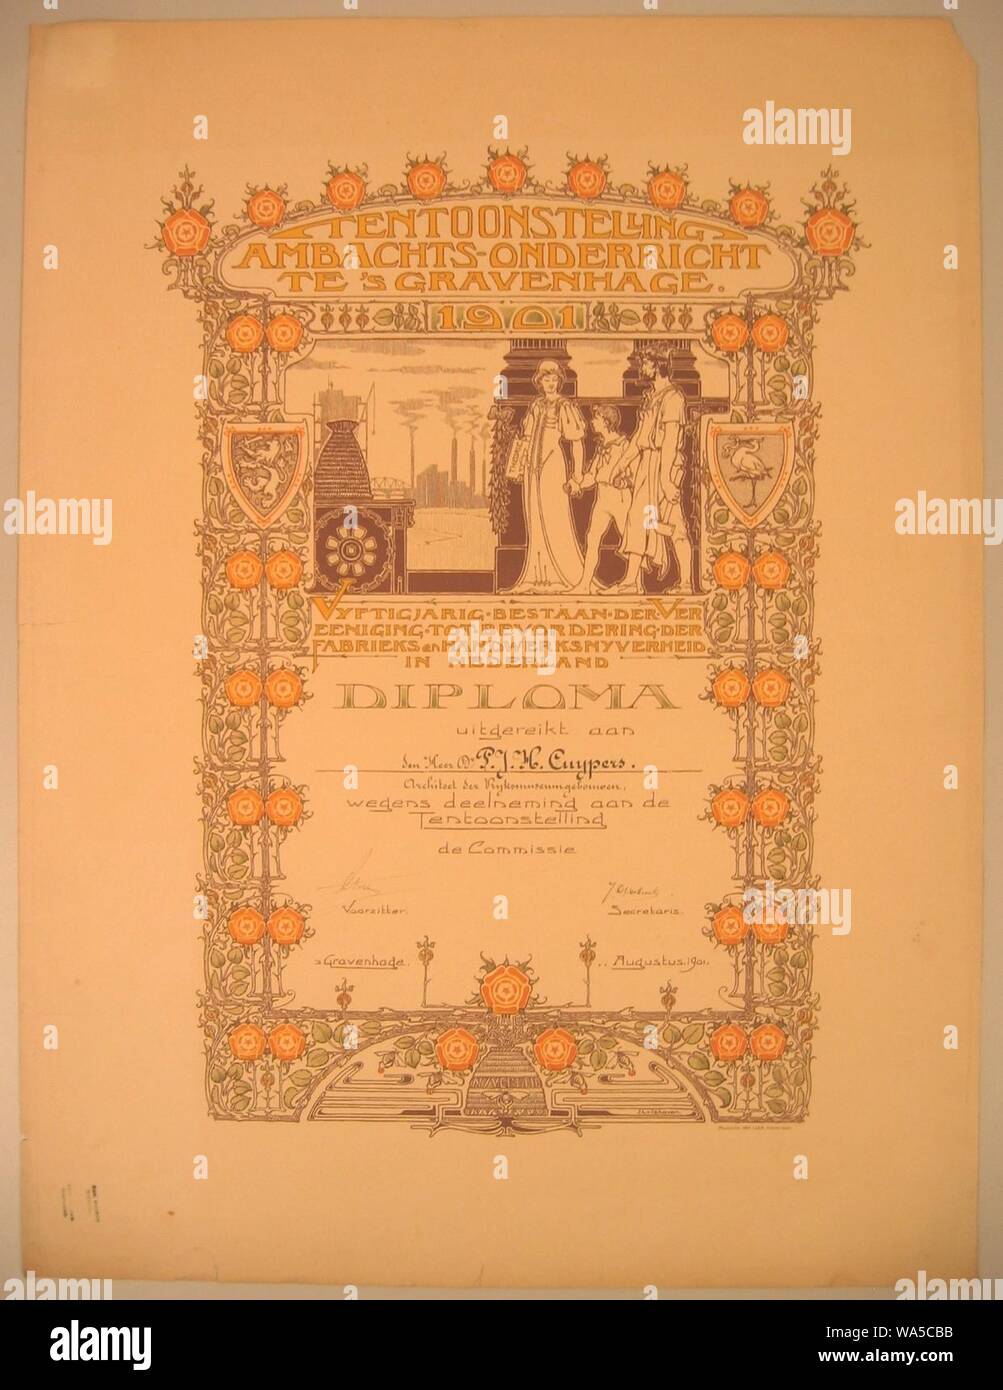 Diploma van de Tentoonstelling Ambachts-Onderricht te 's Gravenhage 1901 uitgereikt aan Pierre Cuypers Cuypershuis 0504. Foto Stock